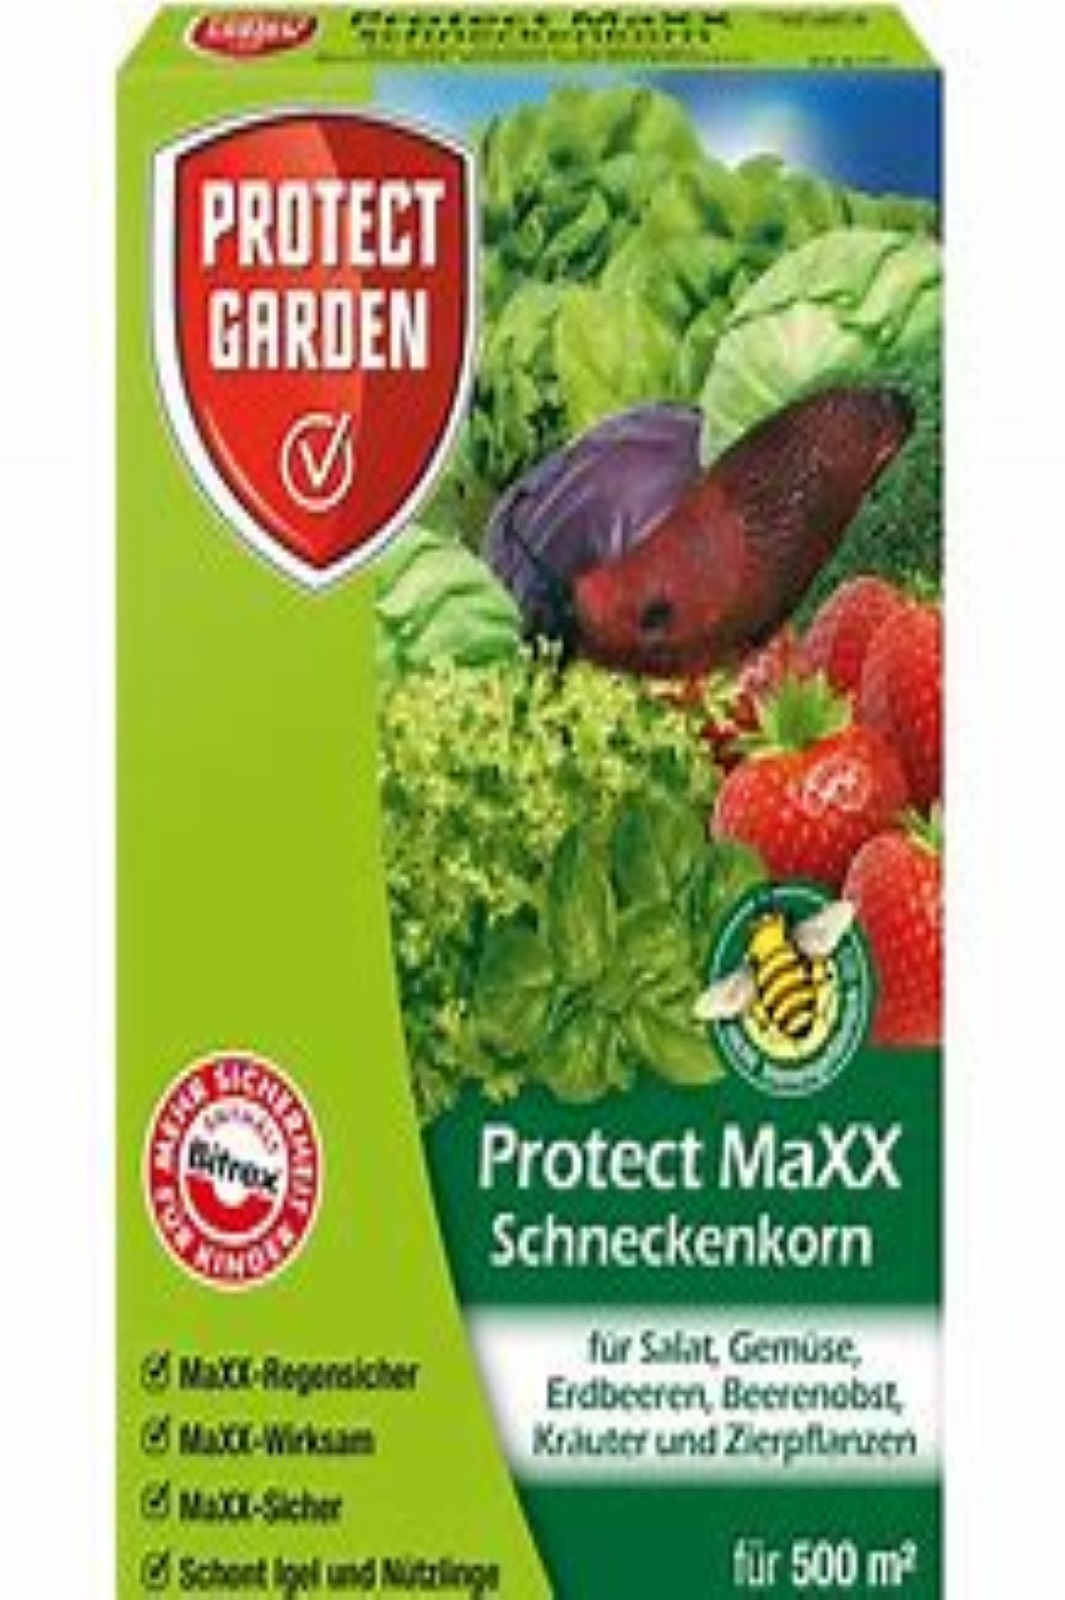 Protect Garden protect Maxx Schneckenkorn 250 g